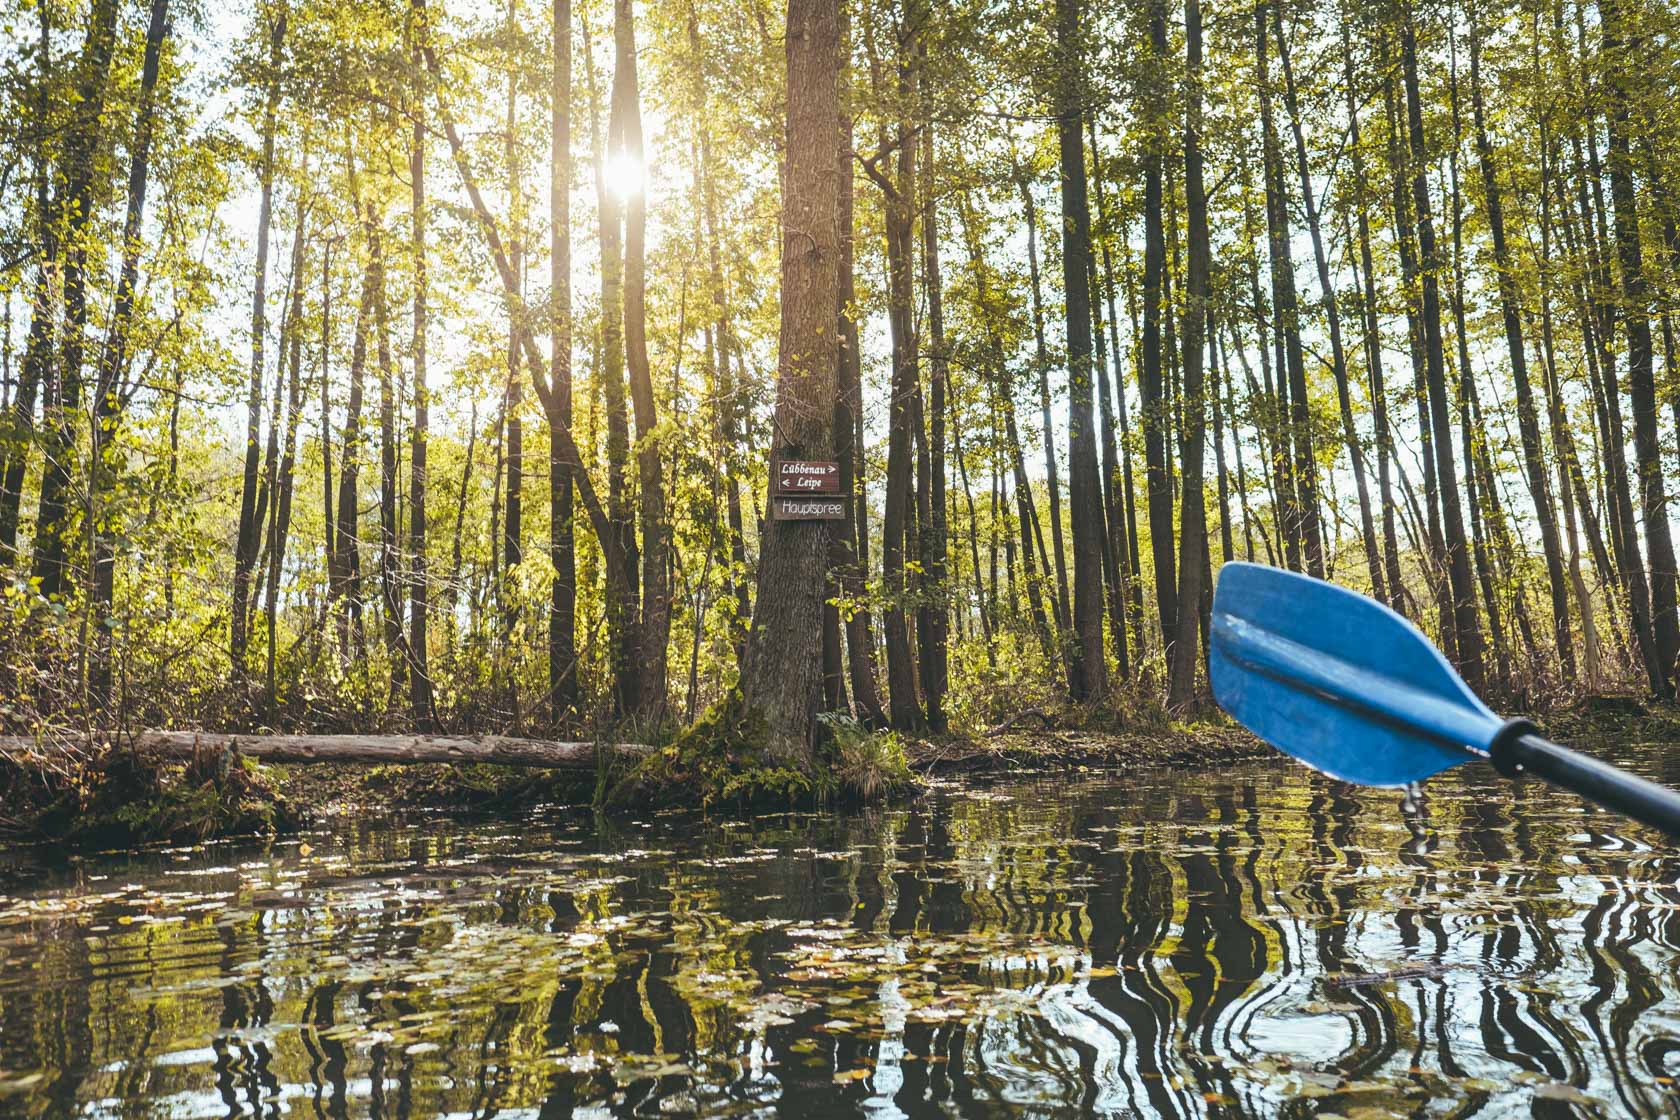 Spreewald Kayaking